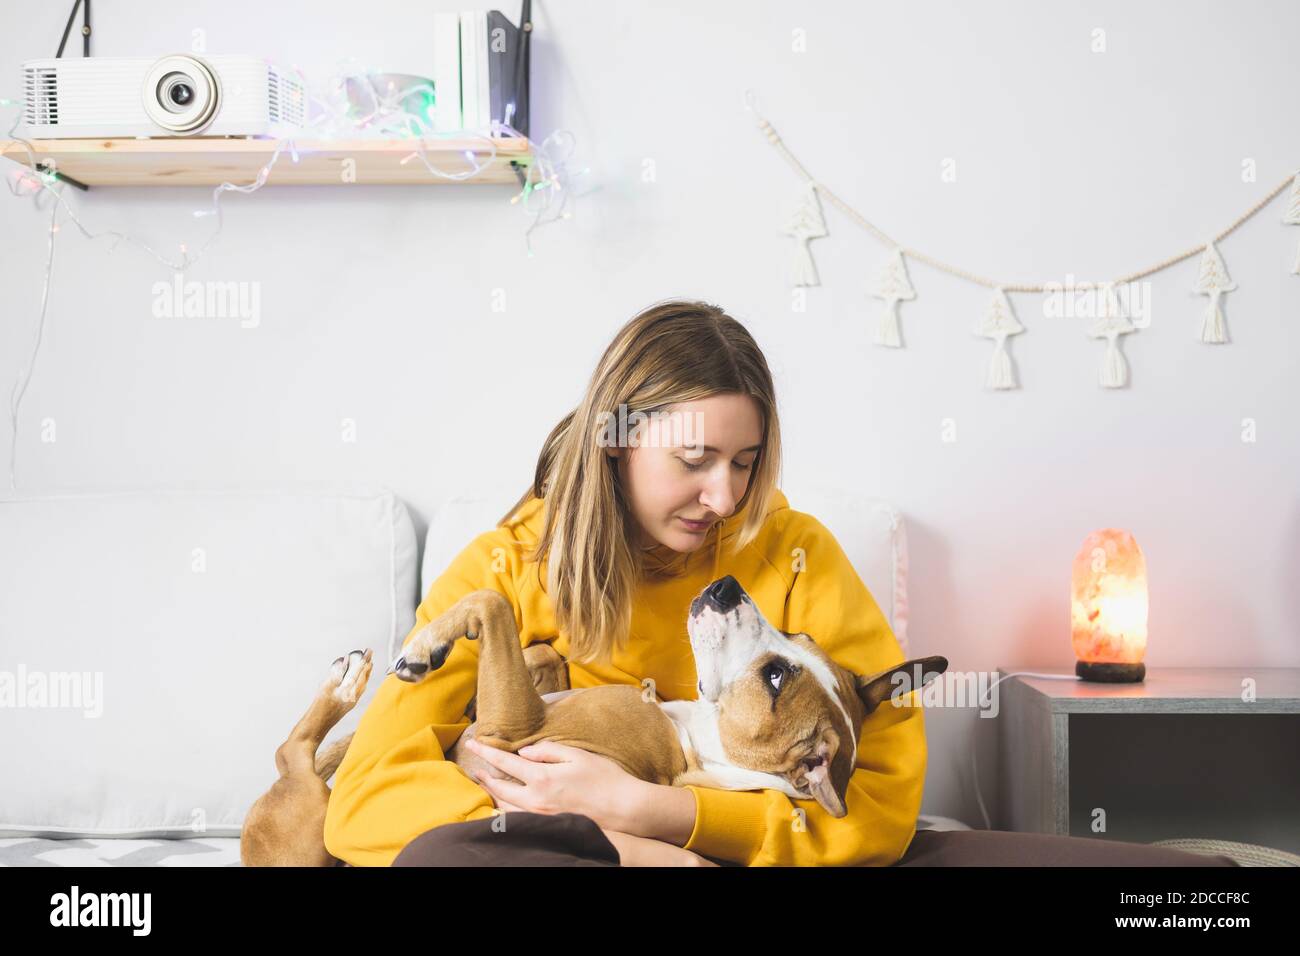 La giovane donna abbracca il suo cane, scena della camera da letto interna. Gioia da animali domestici a casa o durante il blocco o l'isolamento, freddo stagione invernale Foto Stock